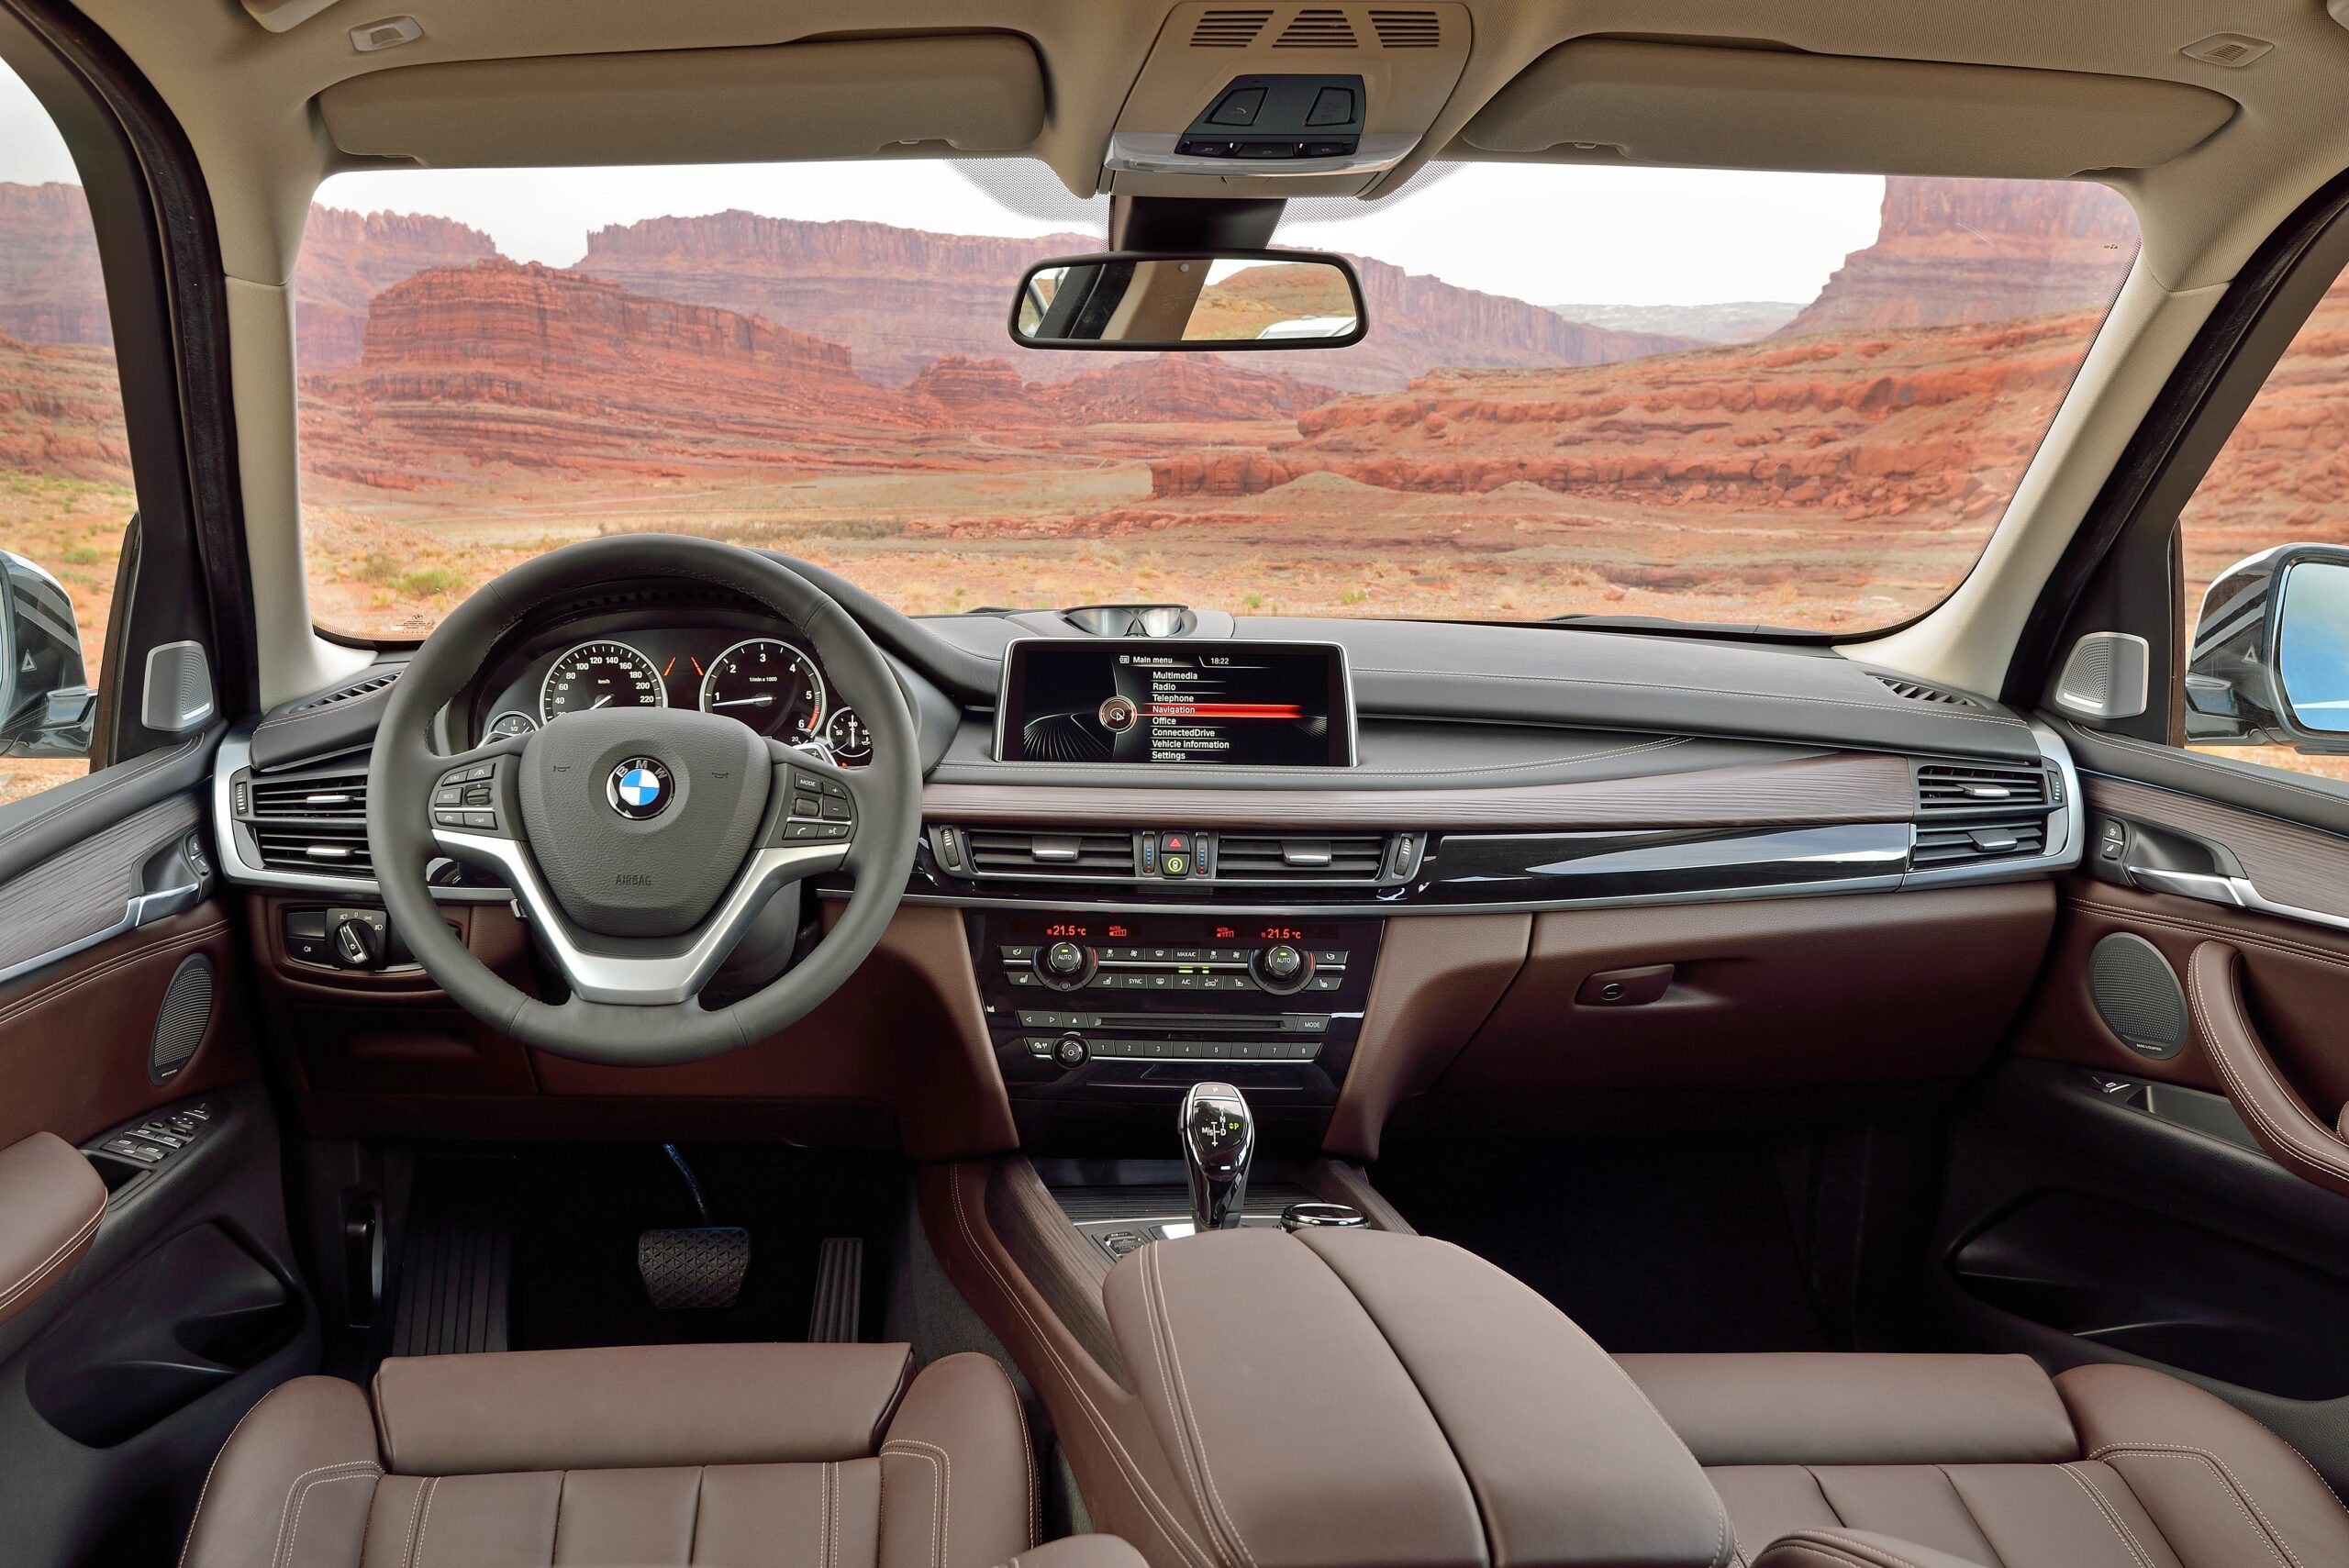 Tải ngay hình ảnh chi của nội thất xe BMW X5 5